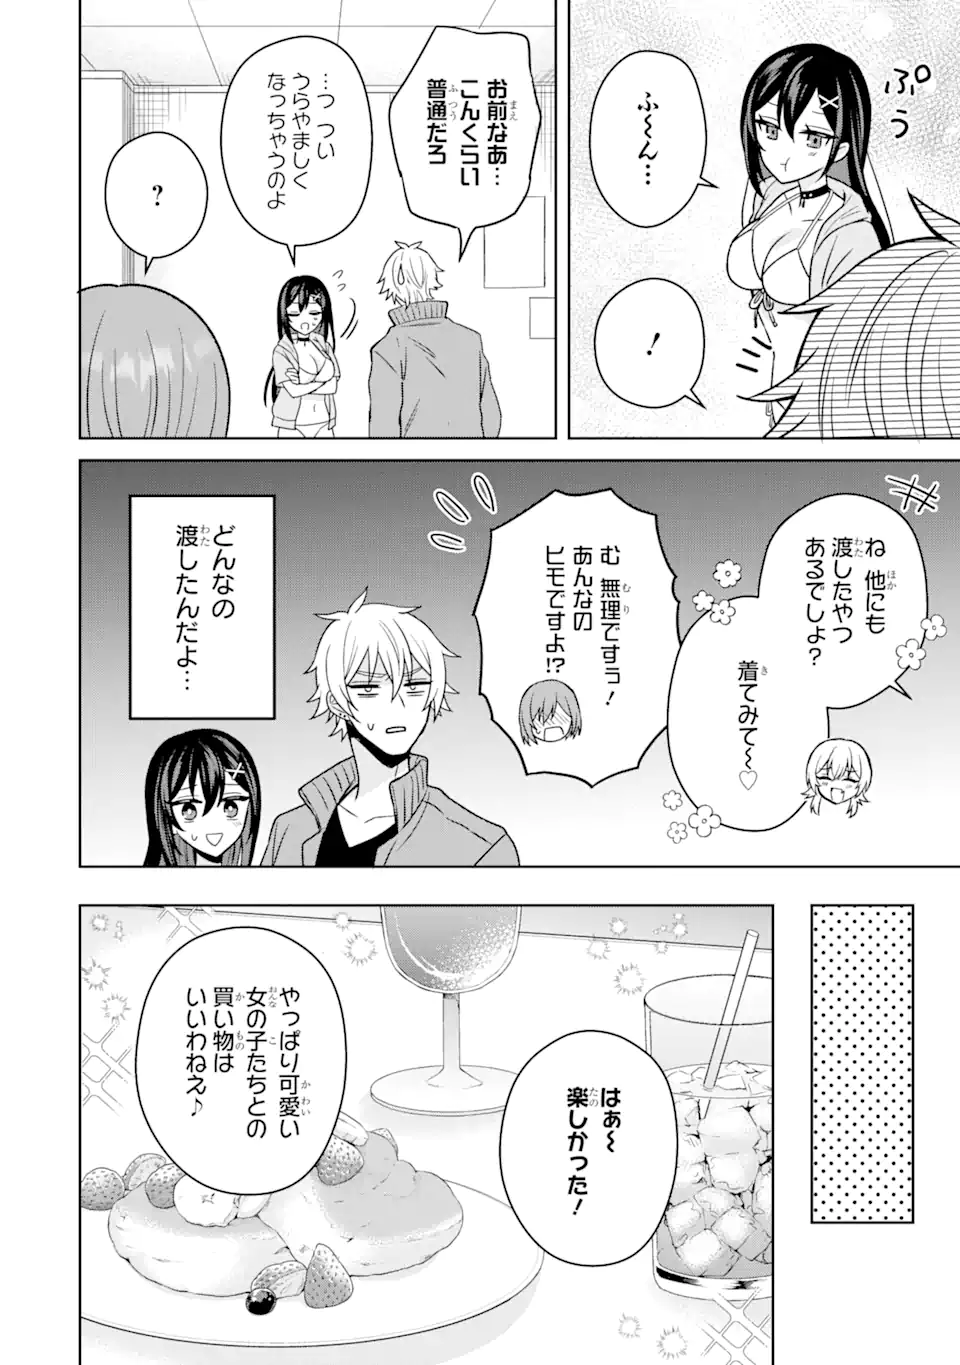 Netorare Manga no Kuzu Otoko ni Tensei Shita Hazu ga Heroine ga Yottekuru Ken - Chapter 13.1 - Page 10